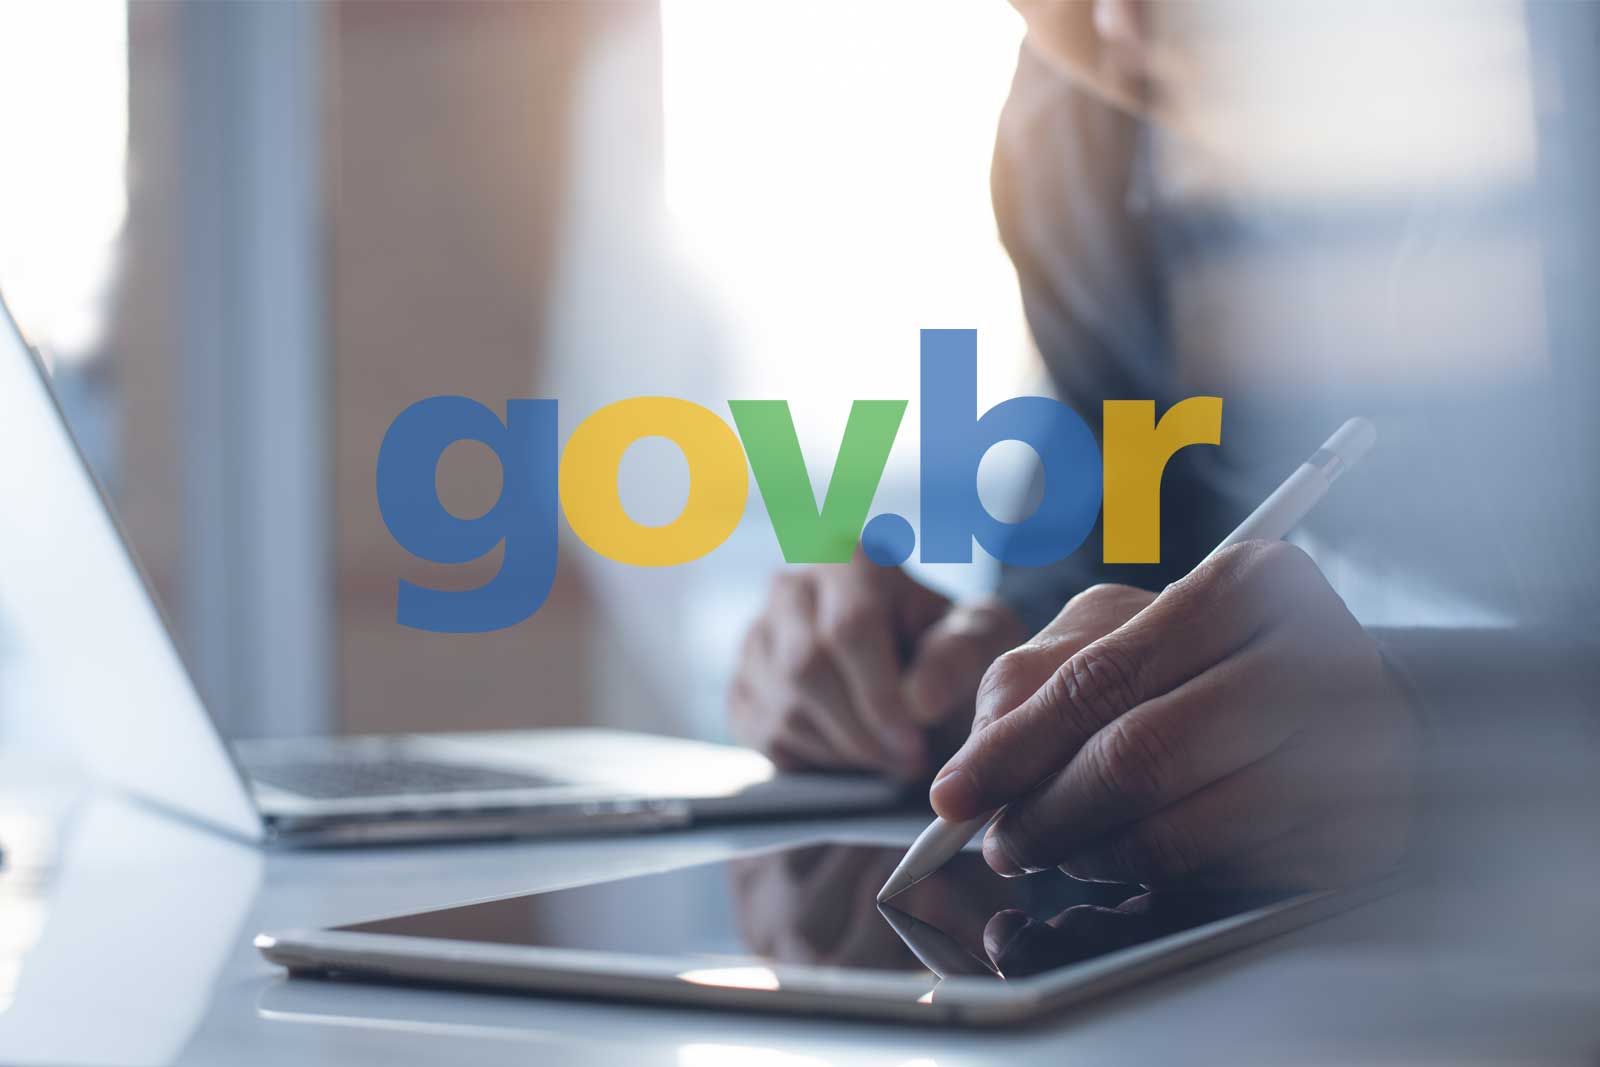 Montagem fotográfica com uma pessoa usando um tablet e o logo do portal gov.br